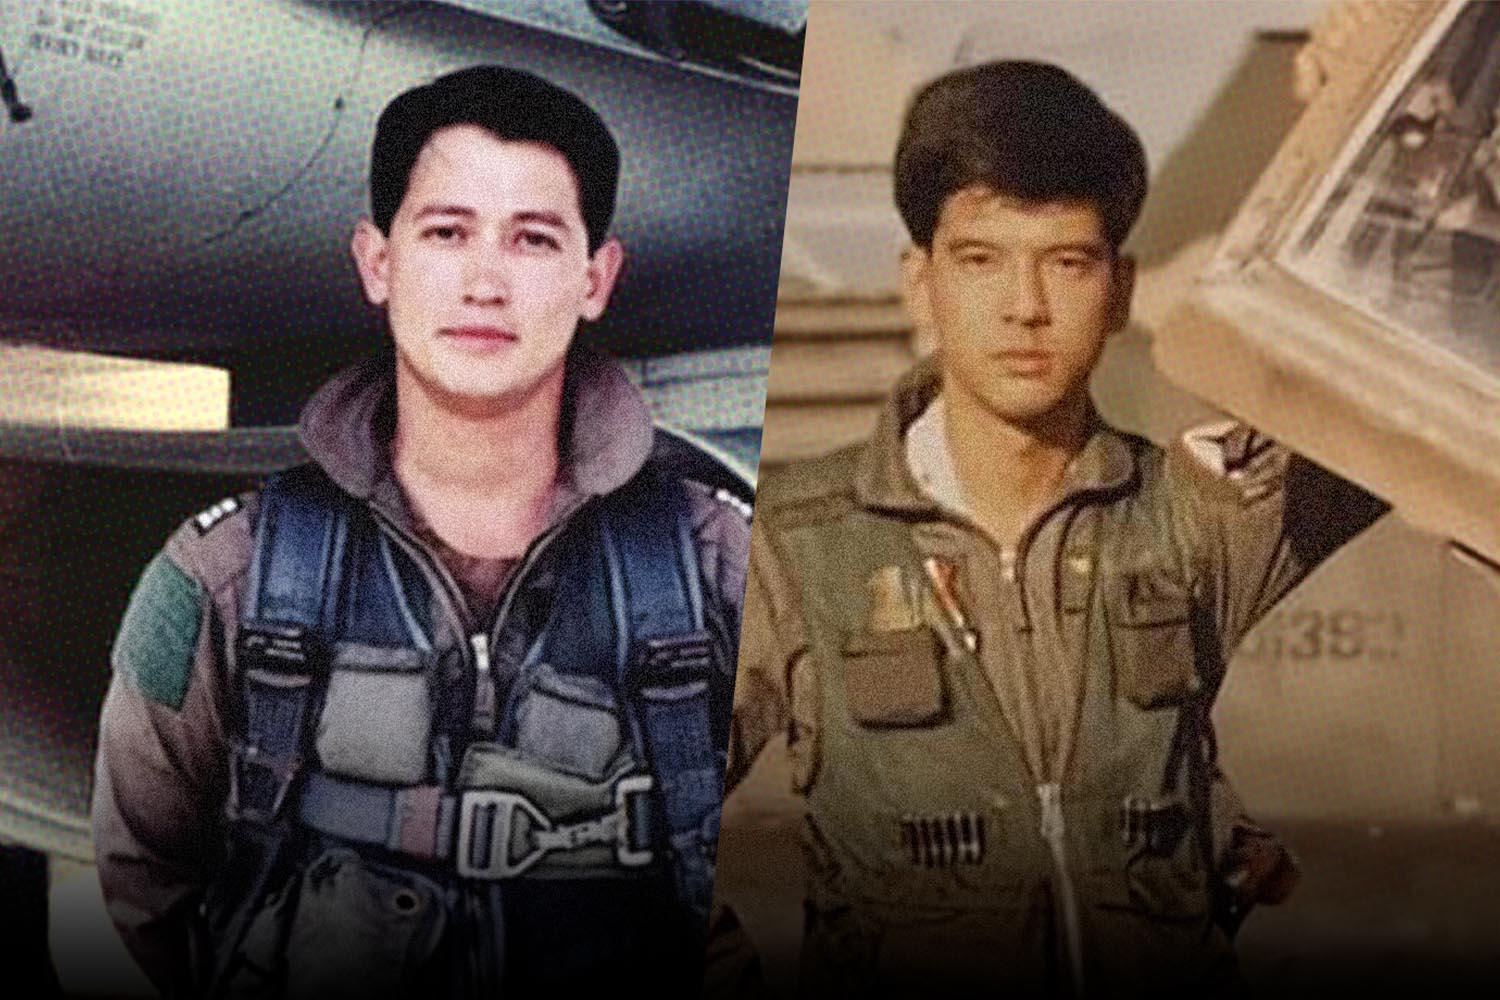 Sita-Anudit-F16-Politic-Thai-Air-Force-SPACEBAR-Hero